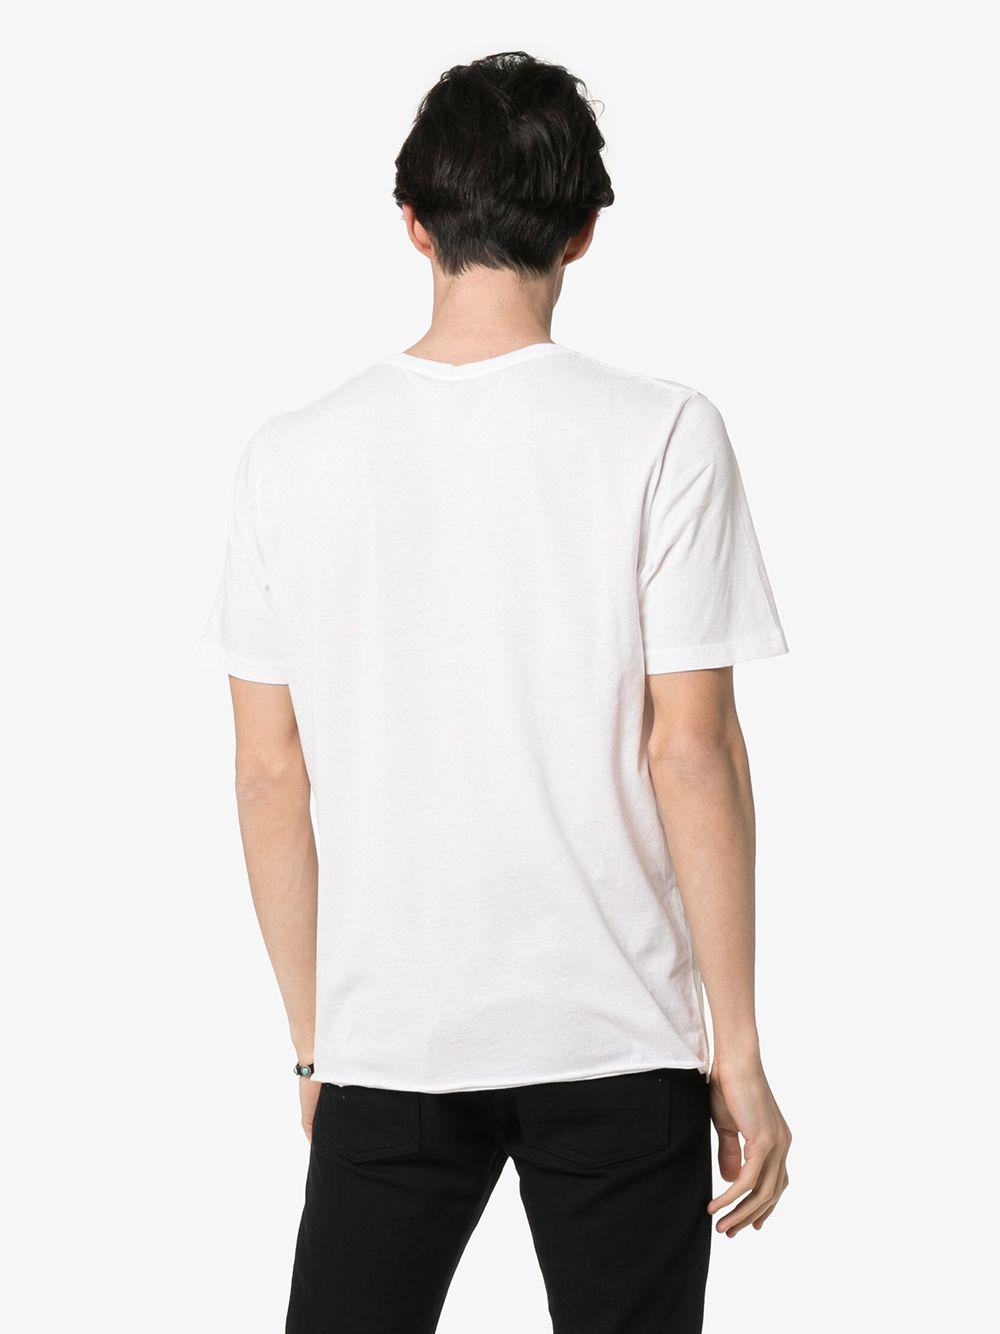 Saint Laurent Rainbow Script Logo Cotton T-shirt in White for Men 